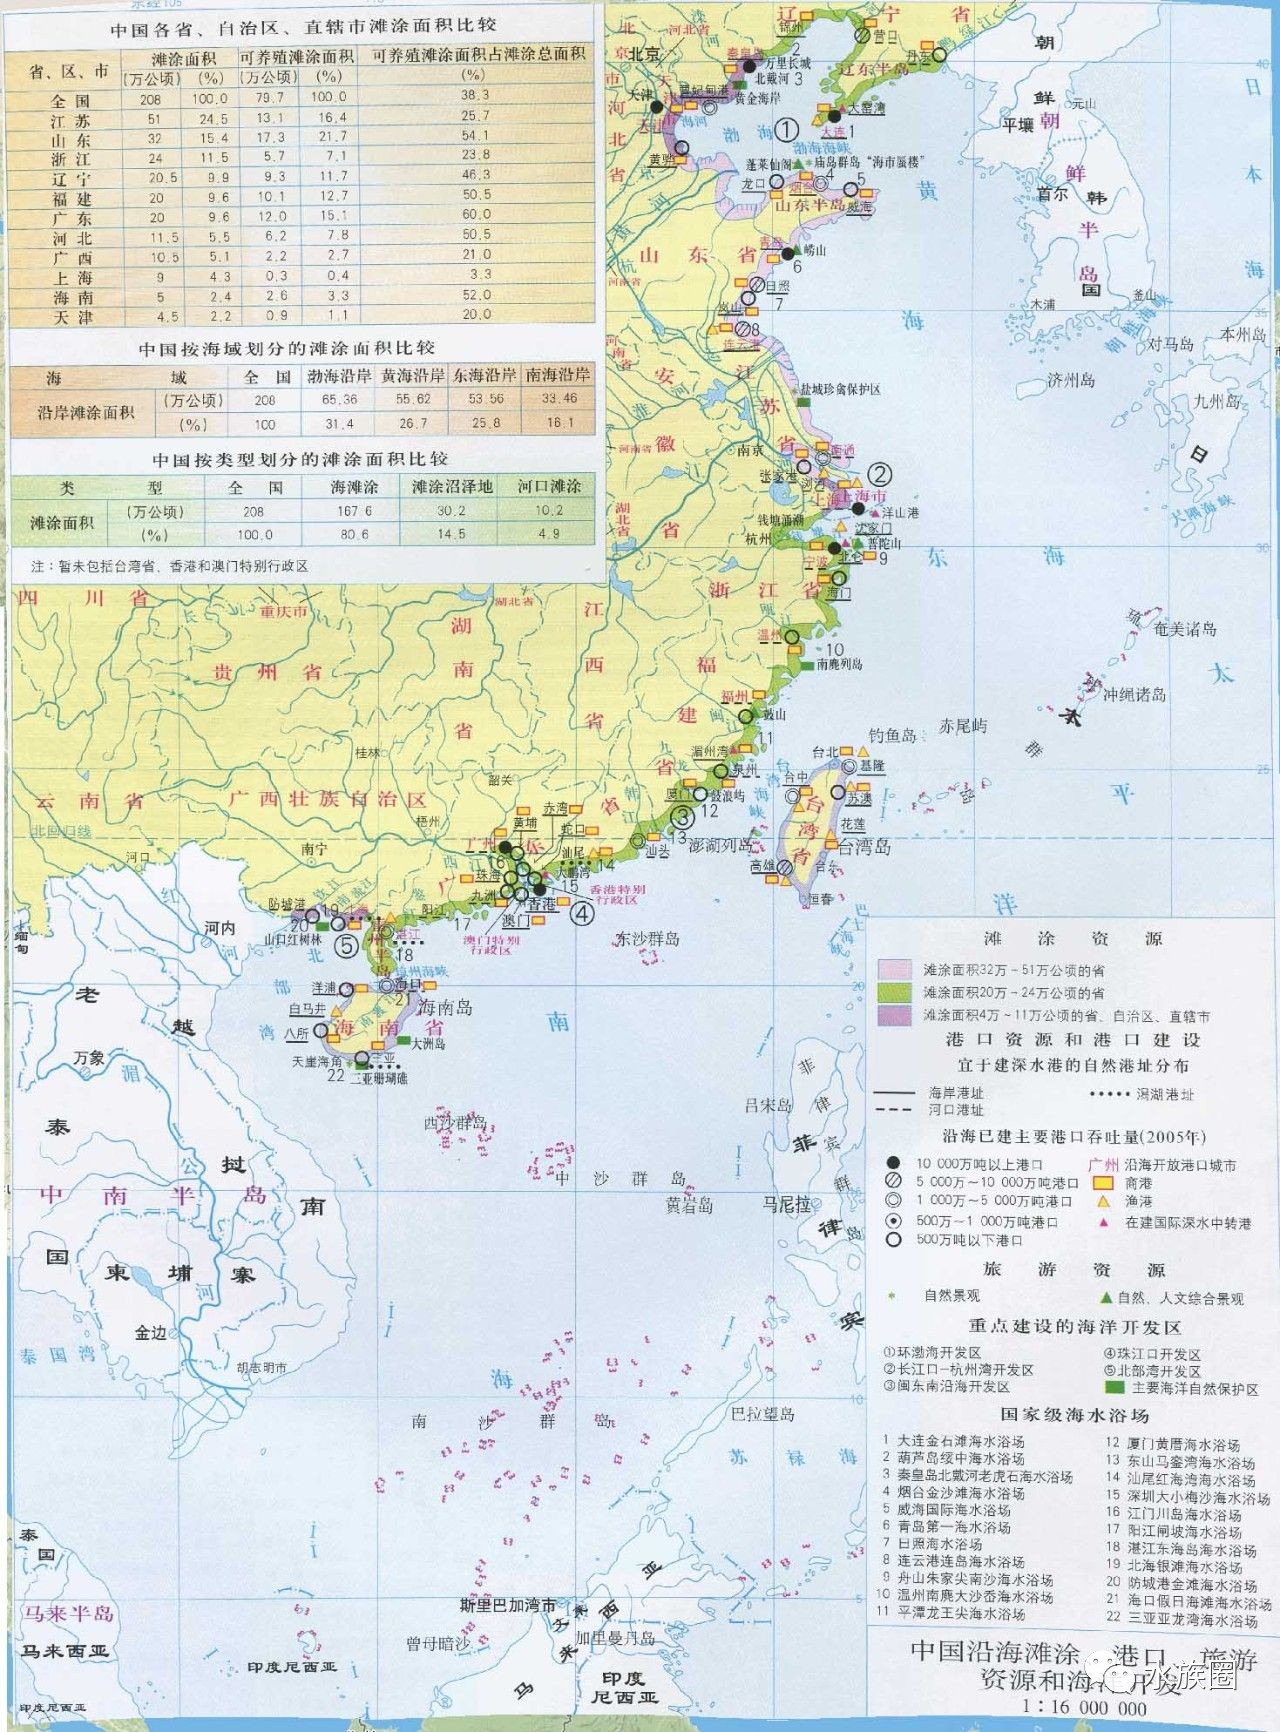 【水族圈低调分享】中国渔业地图全集,收藏!